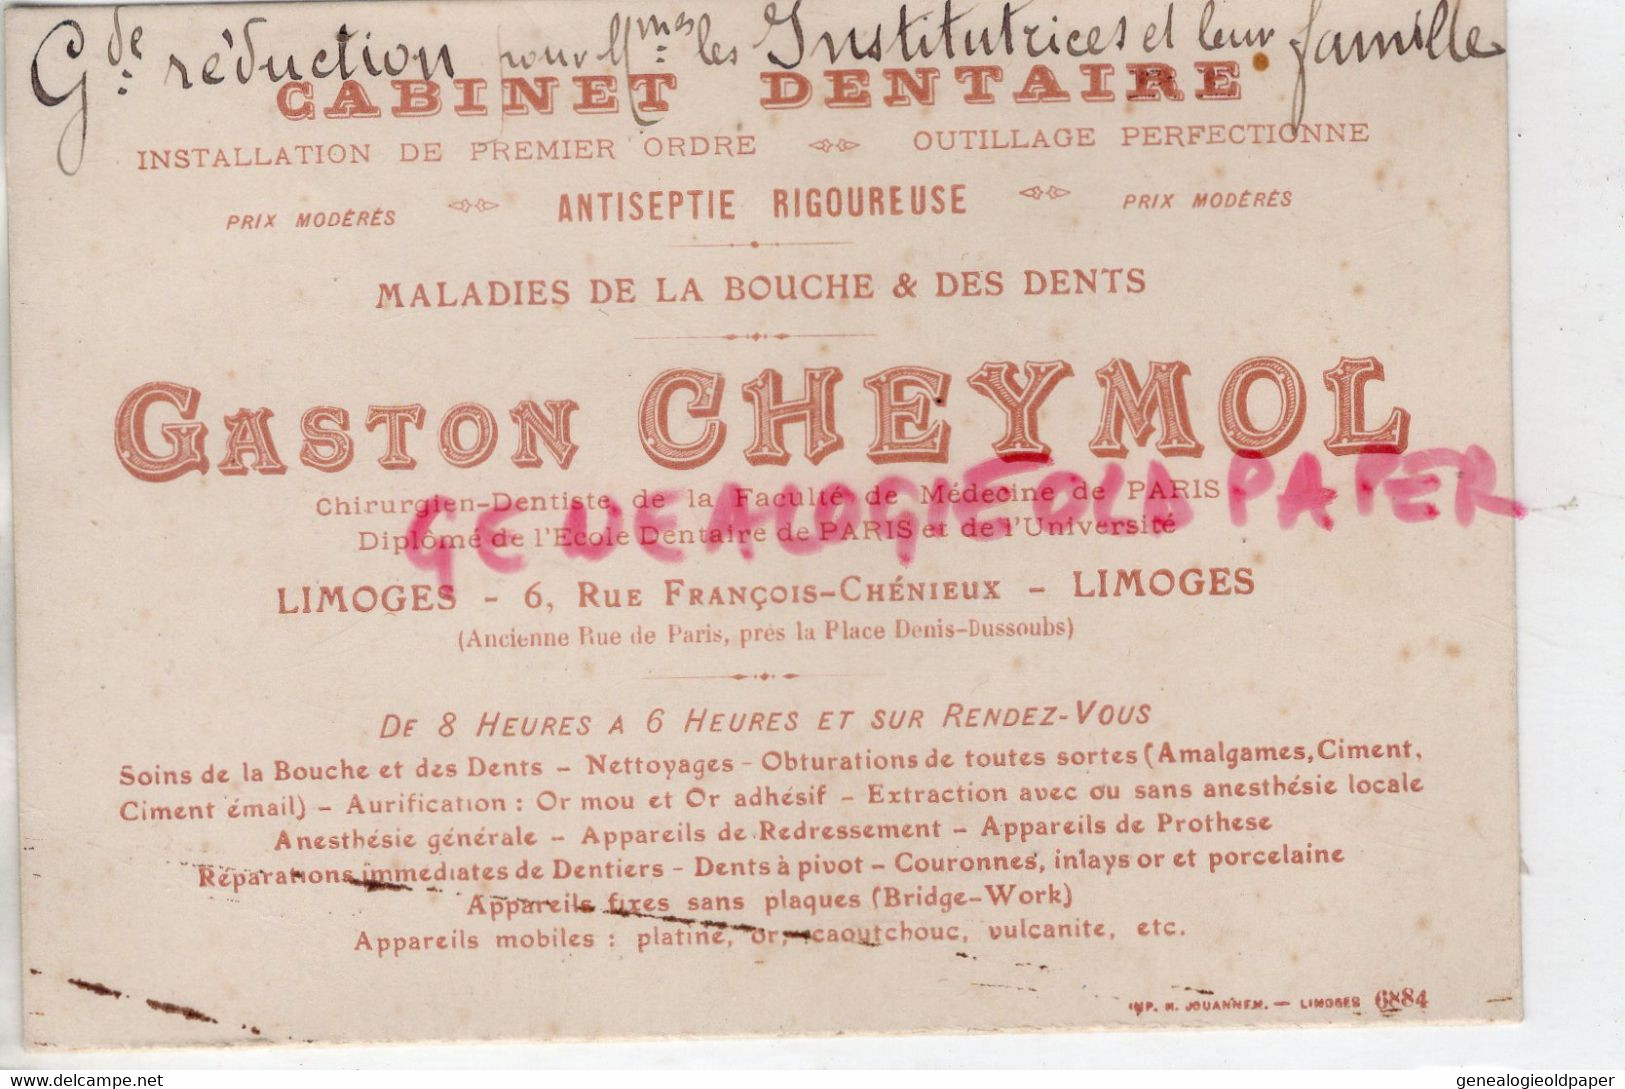 87- LIMOGES- CARTE GASTON CHEYMOL -CHIRURGIEN DENTISTE CABINET DENTAIRE- 6 RUE FRANCOIS CHENIEUX -MEDECINE PARIS - Petits Métiers